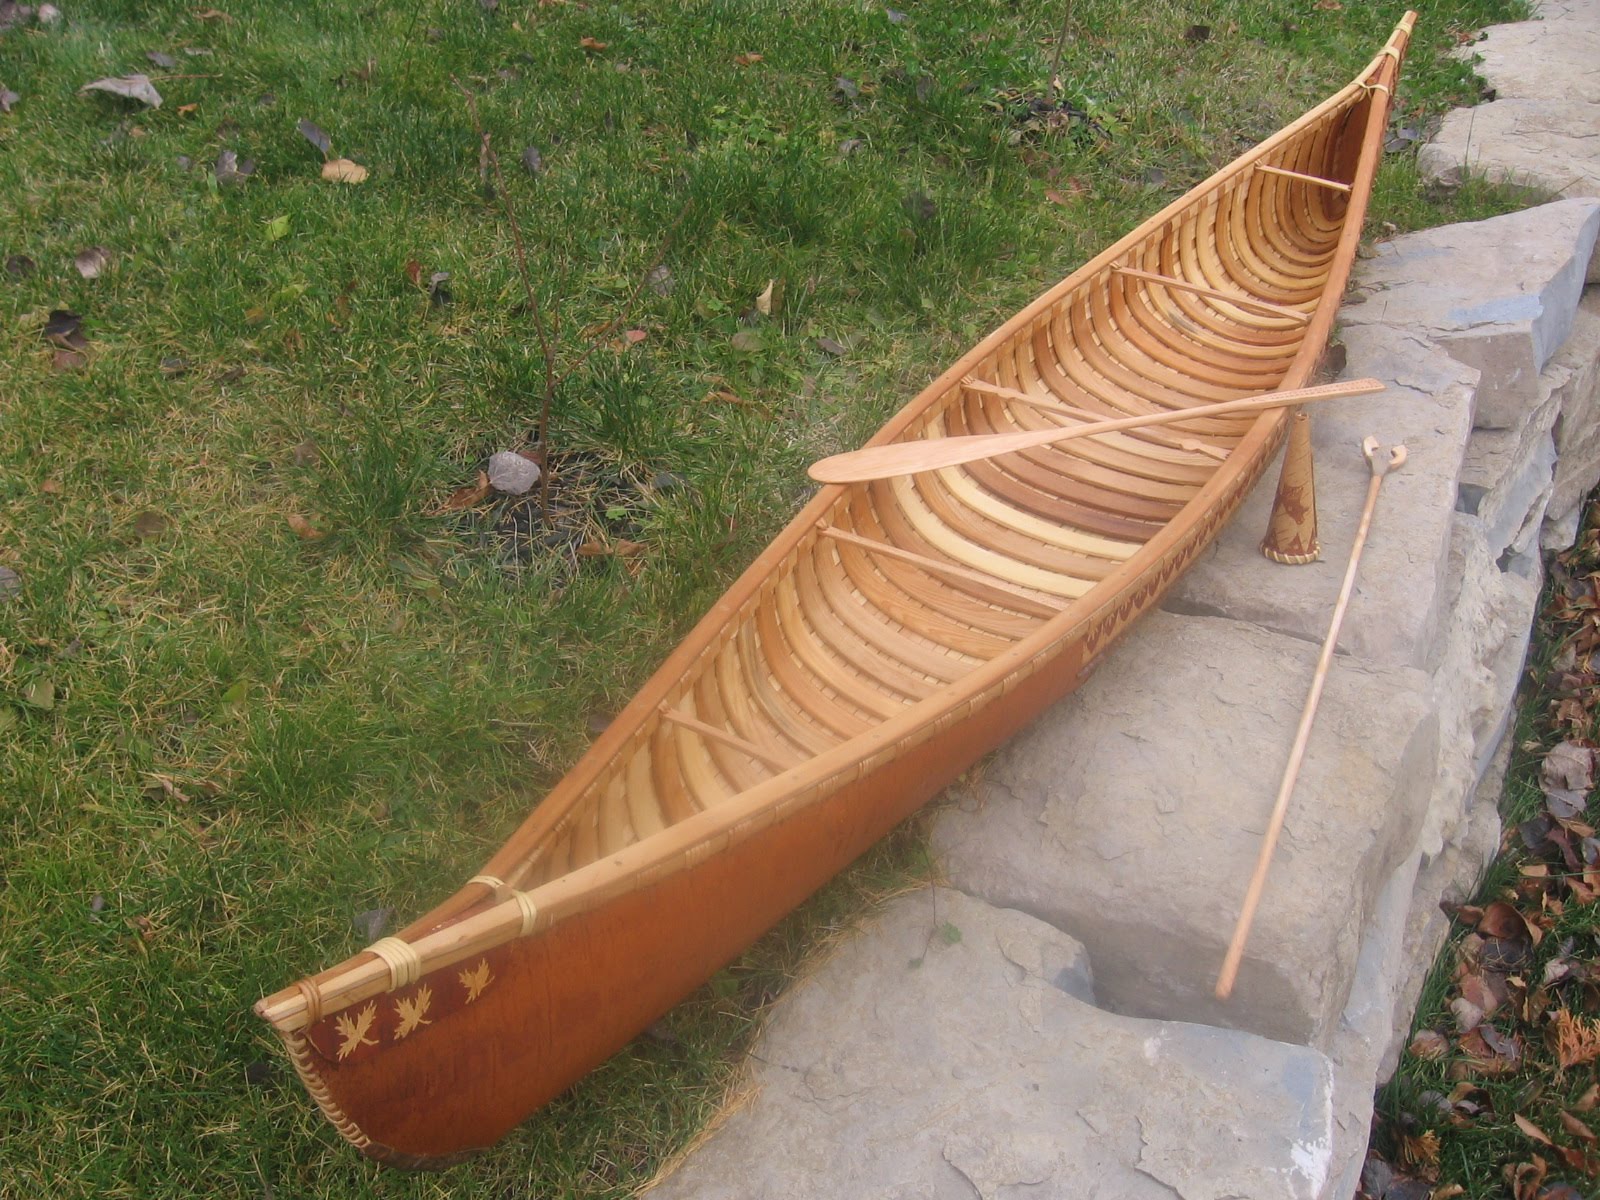 Francois' Birchbark Canoes